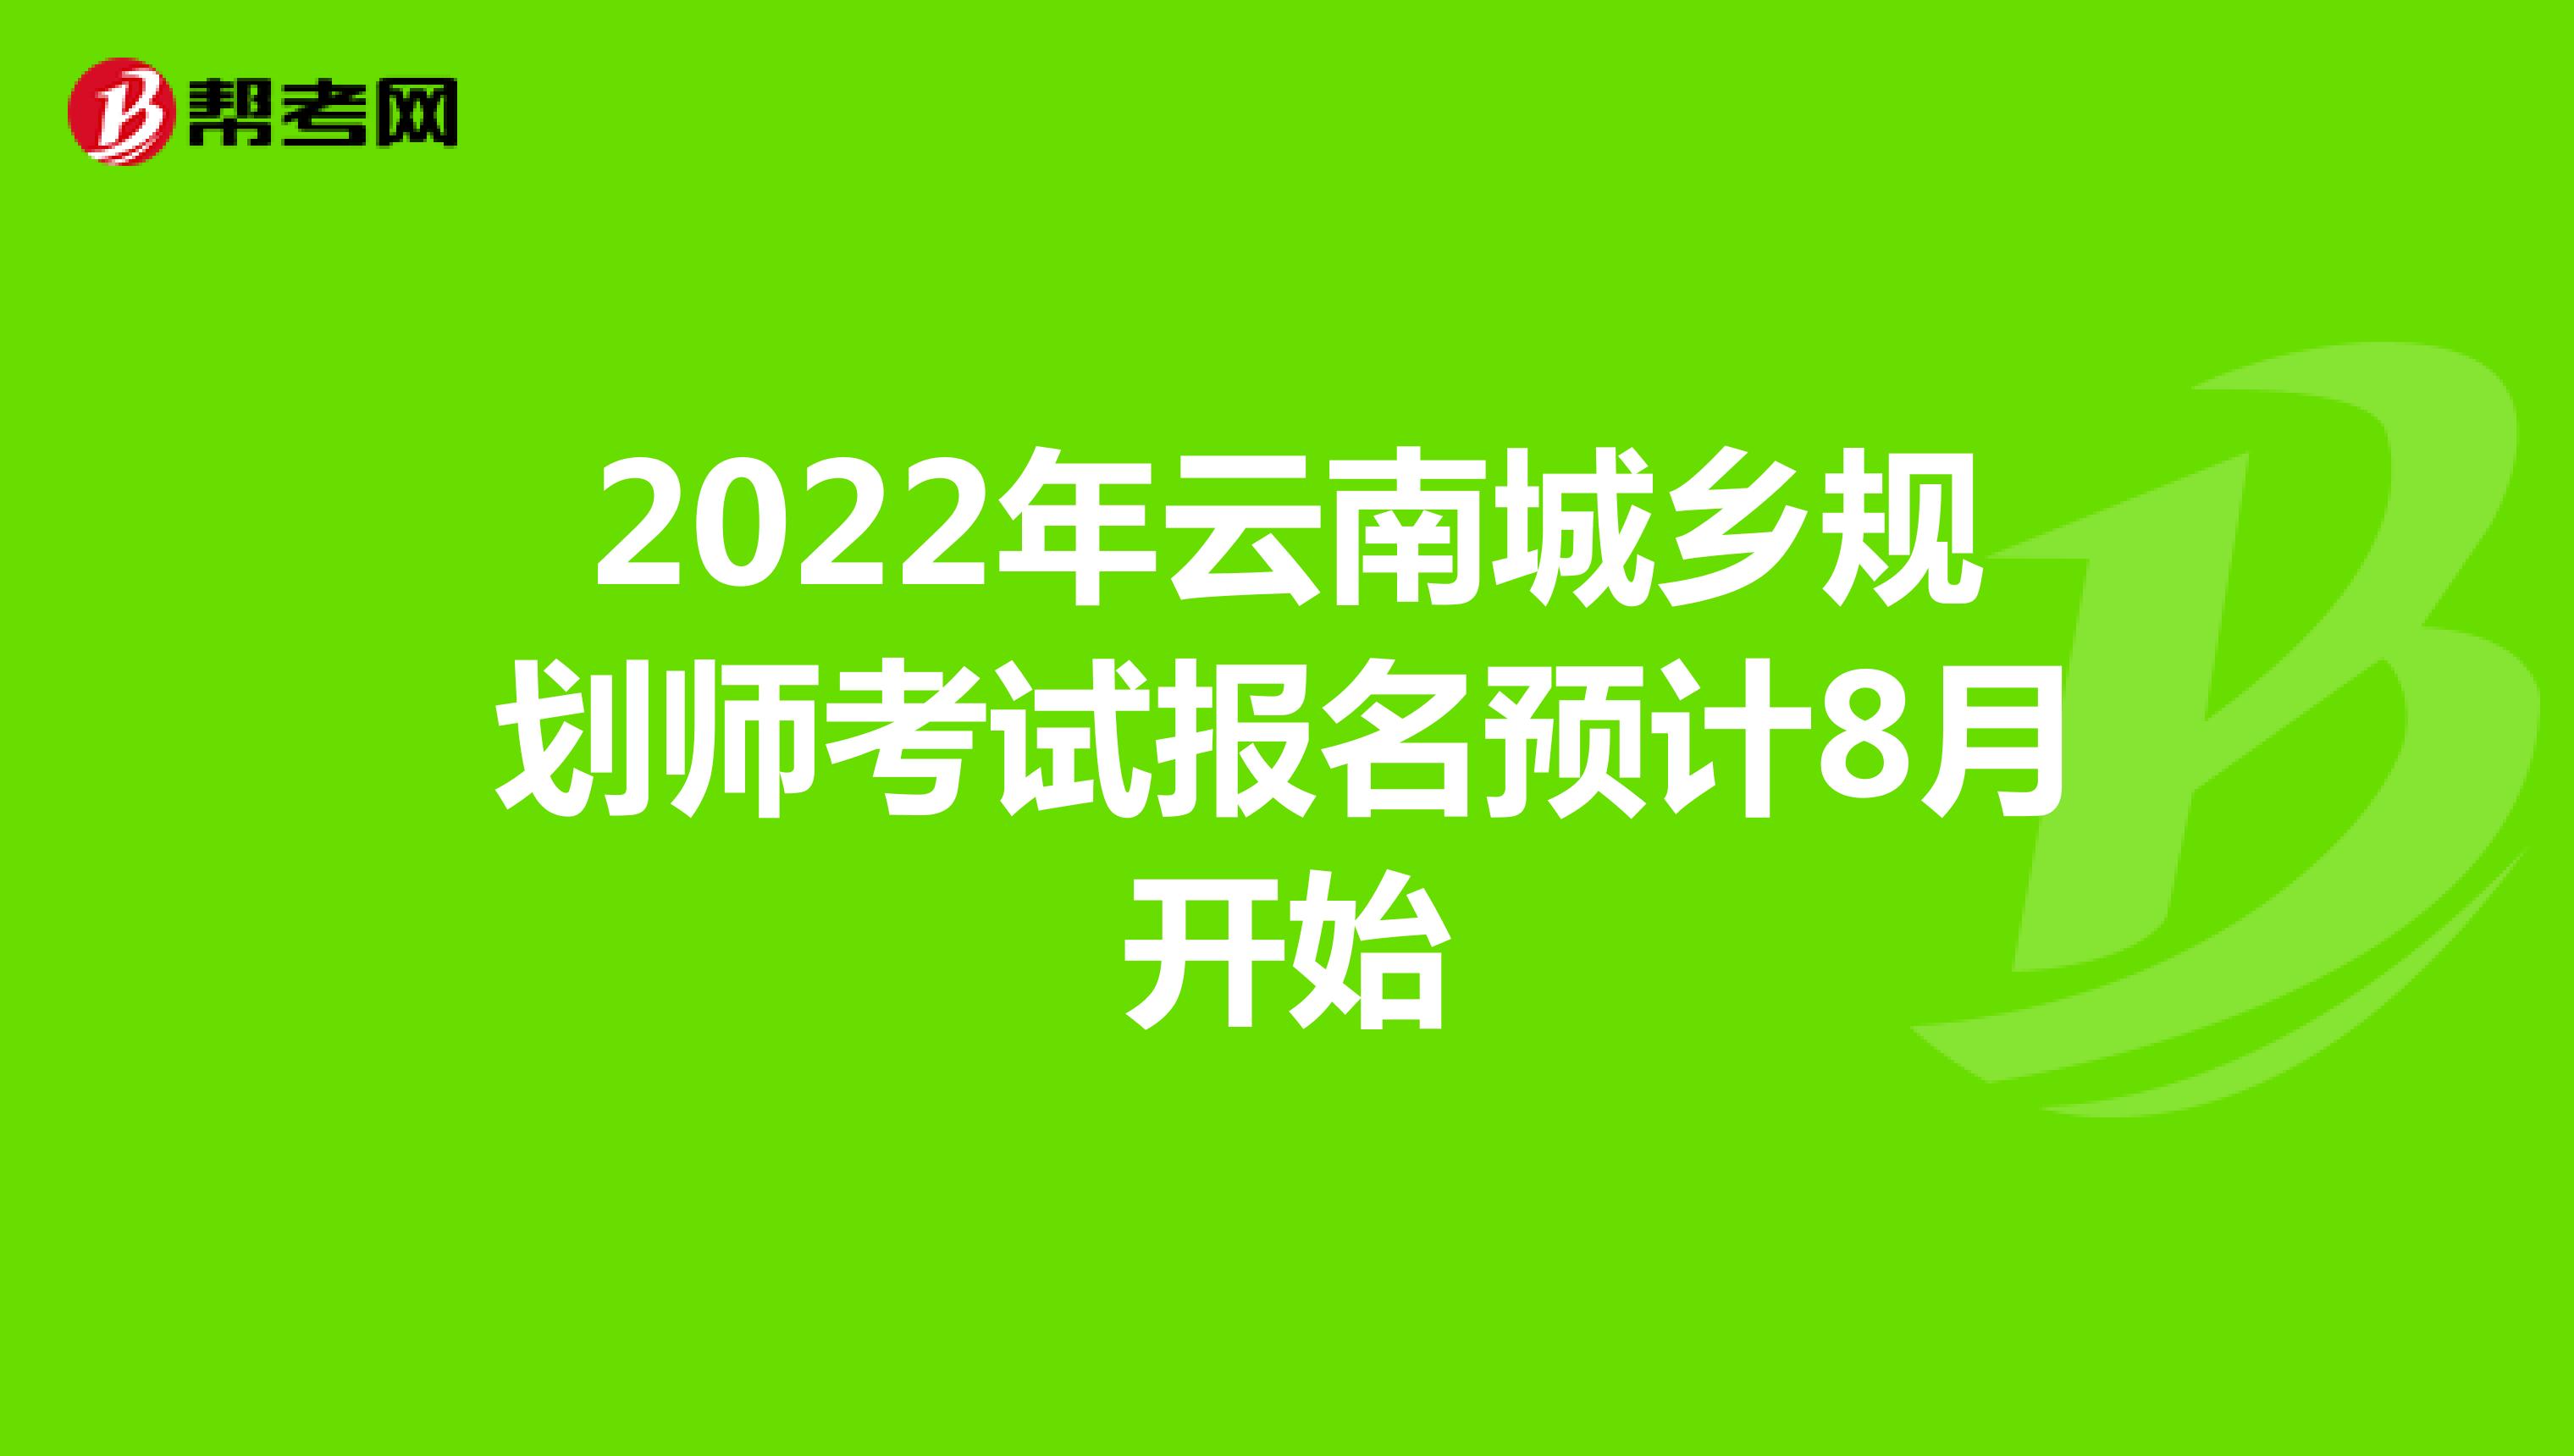 2022年云南城乡规划师考试报名预计8月开始